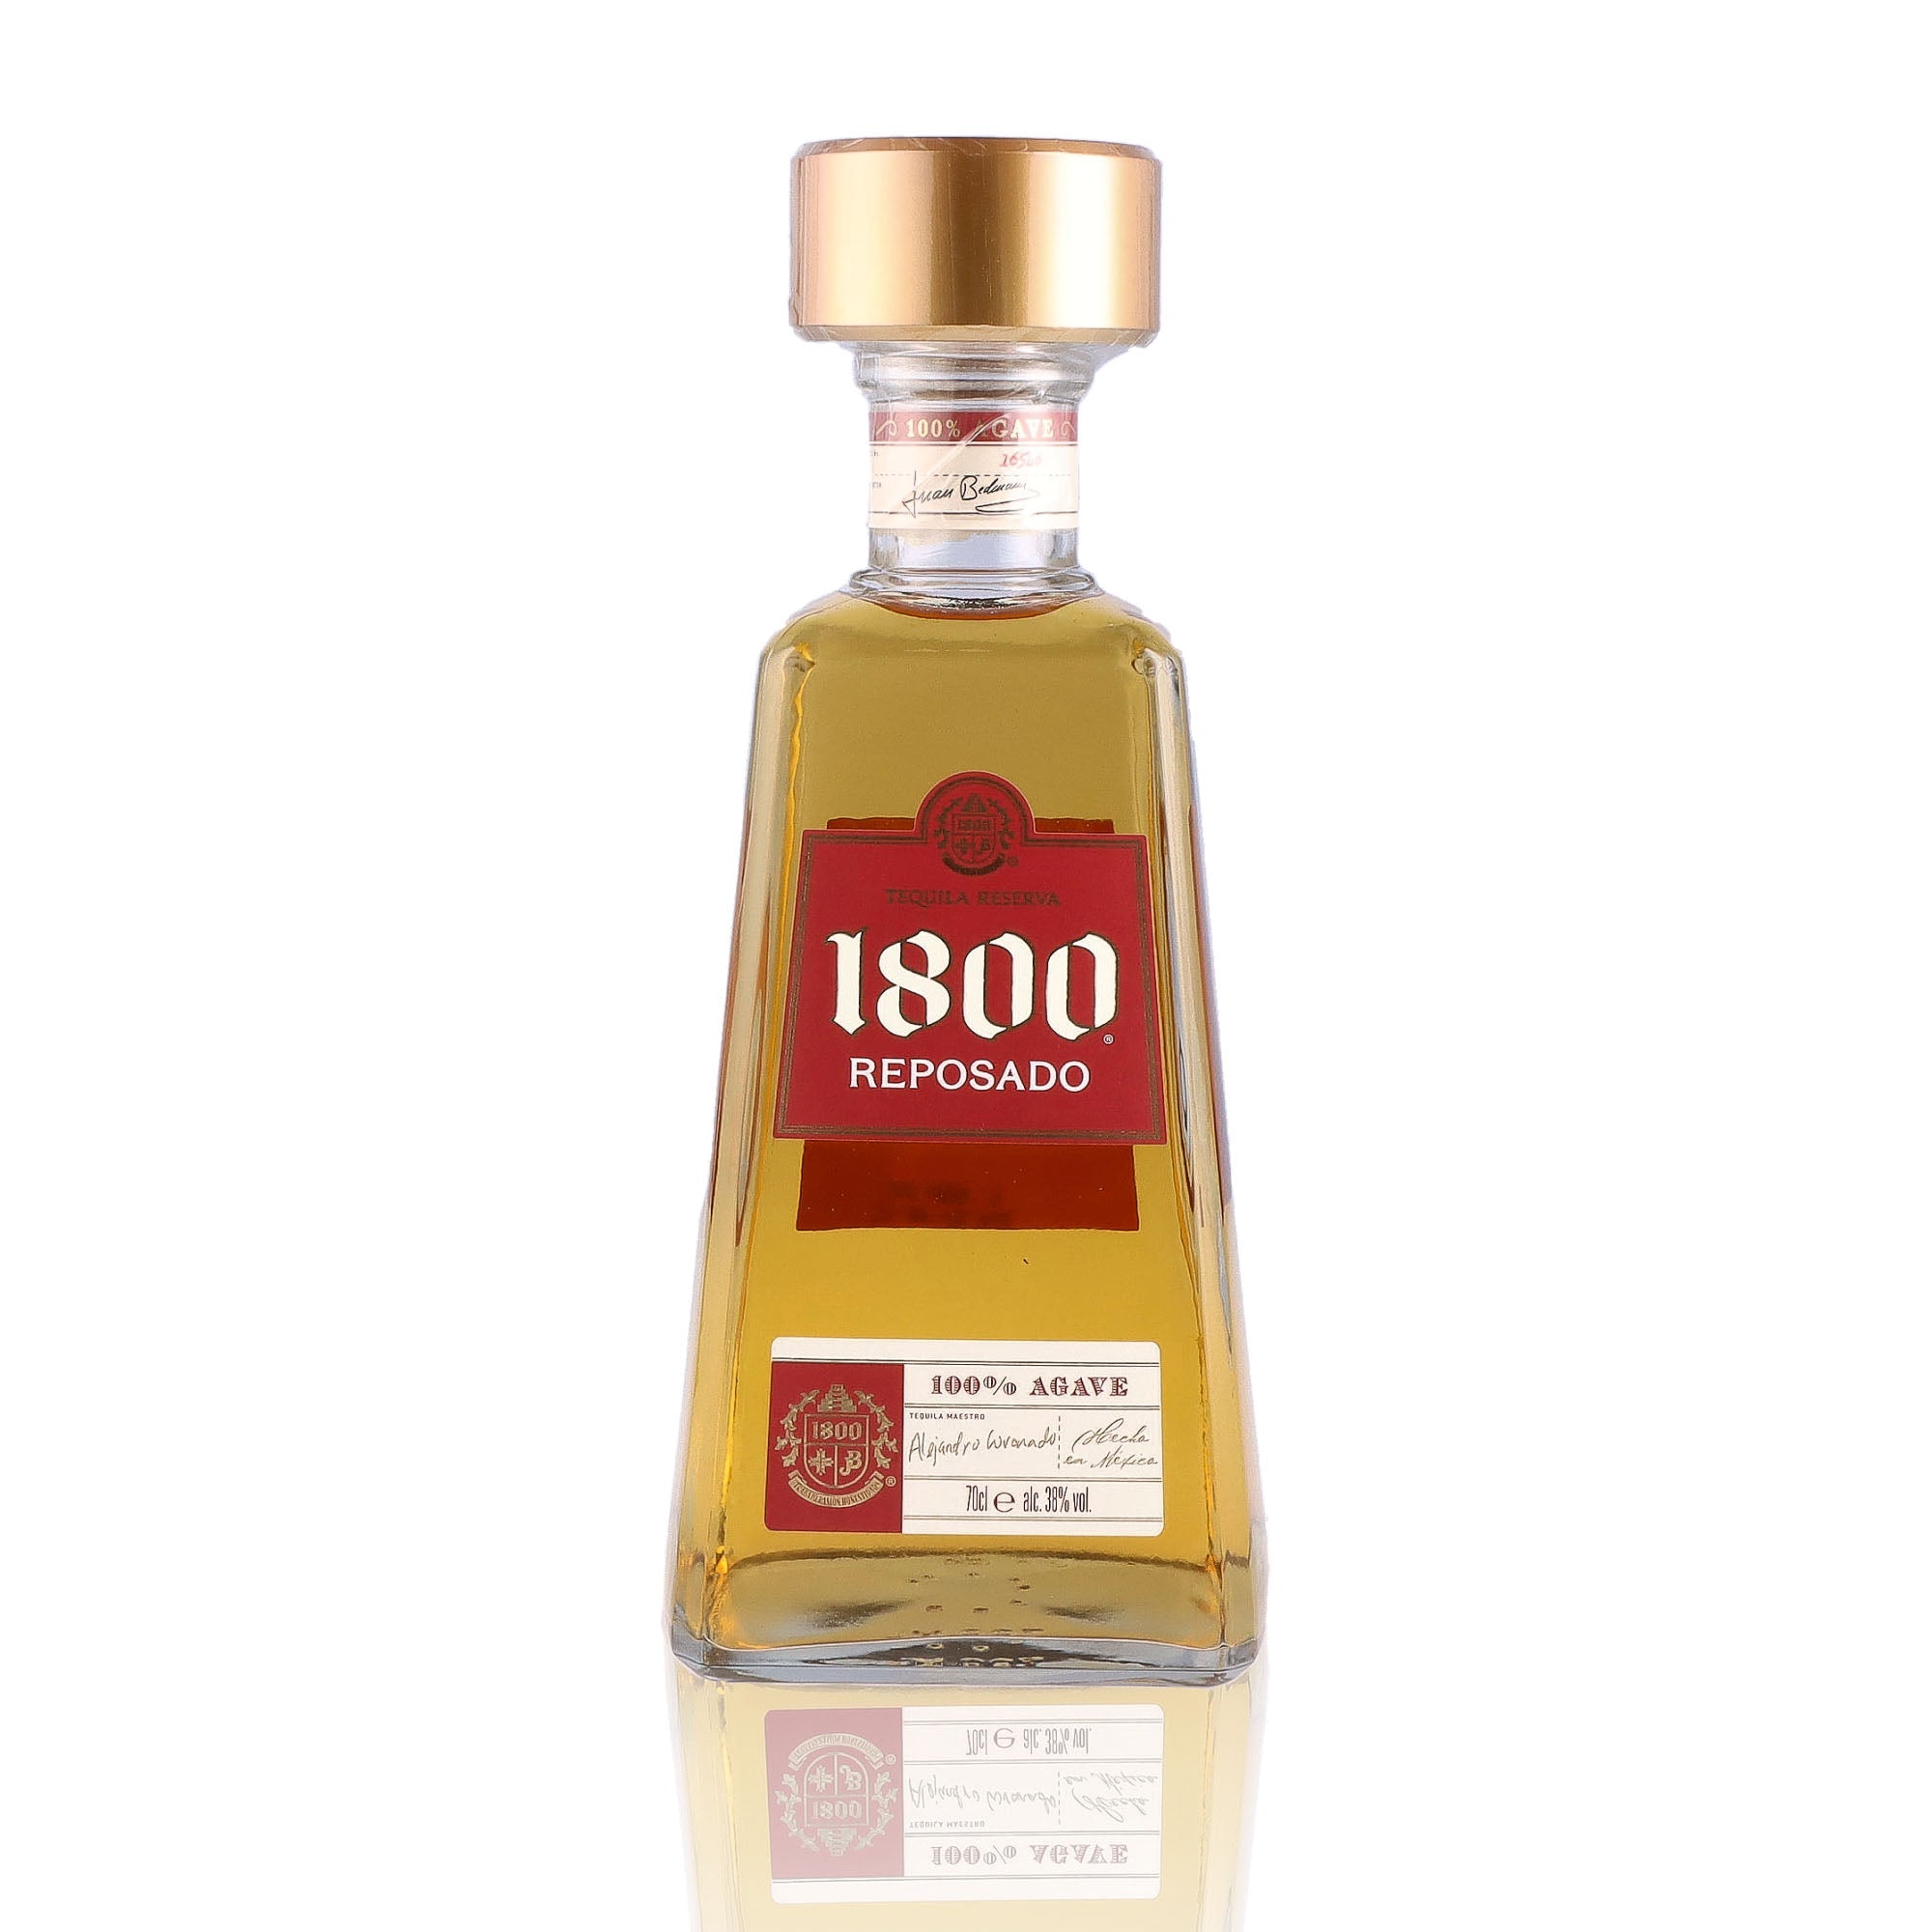 Une bouteille de Tequila, de la marque 1800, nommée Reposado.